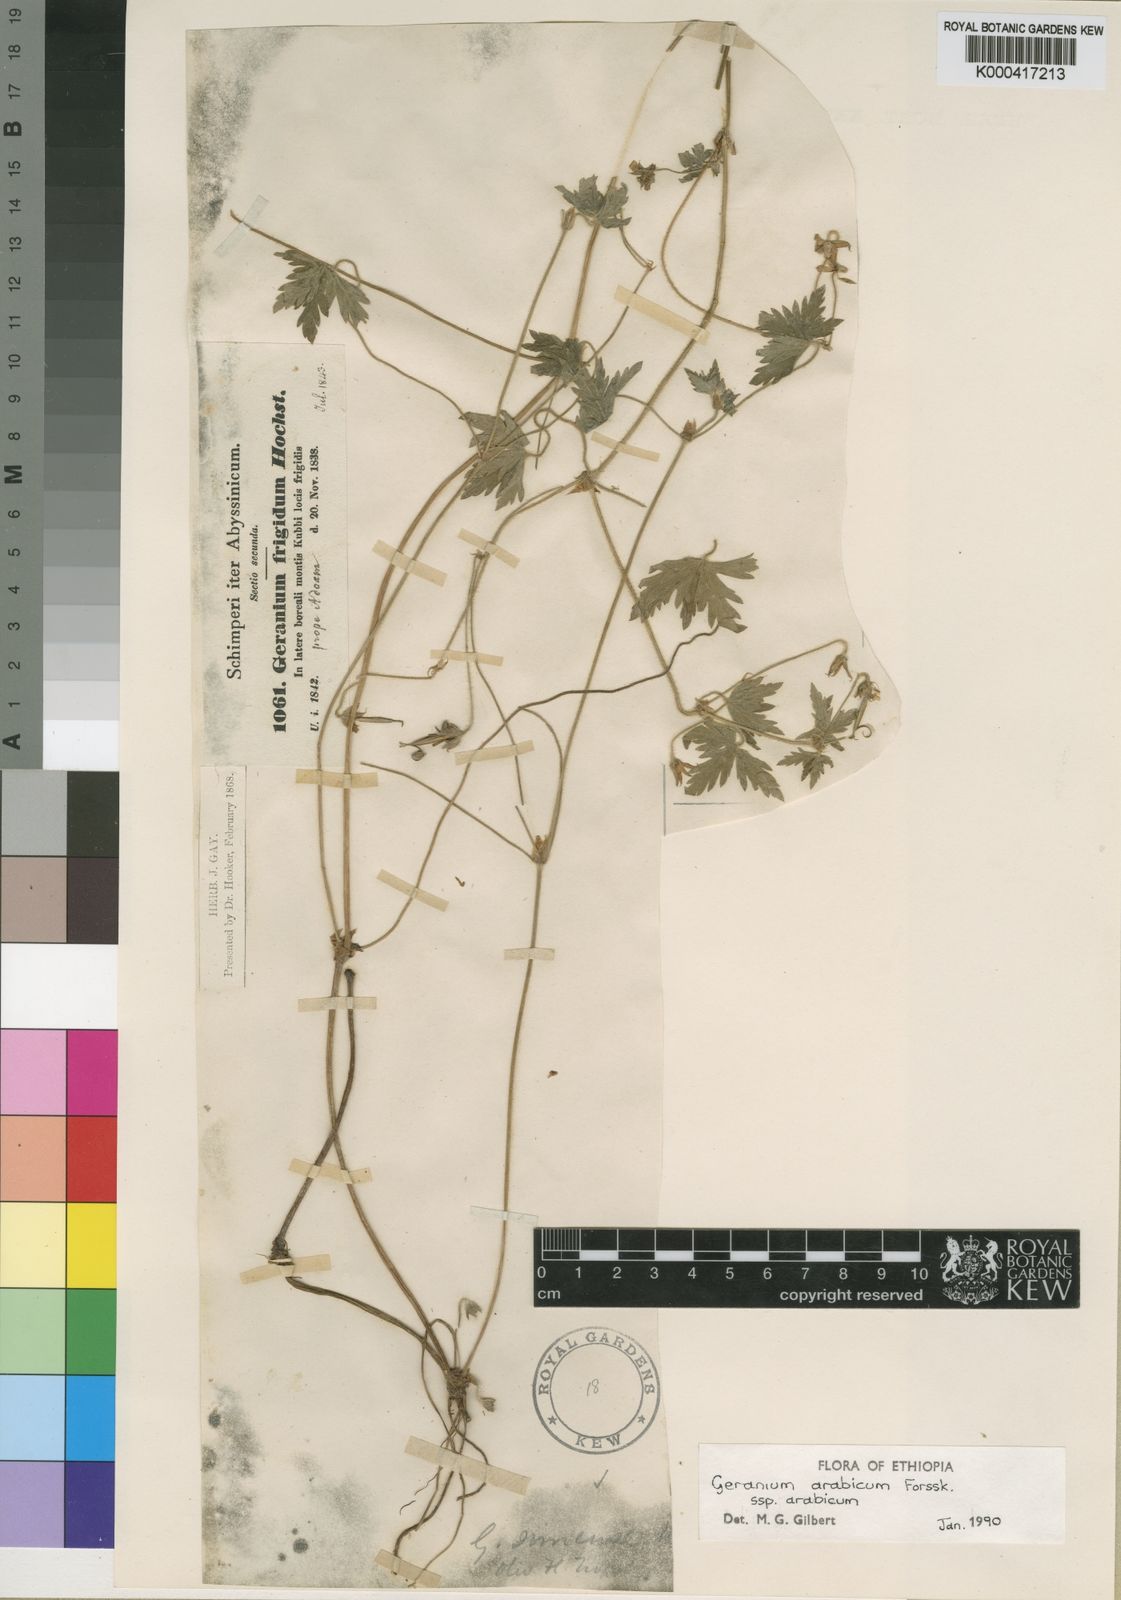 Geranium arabicum